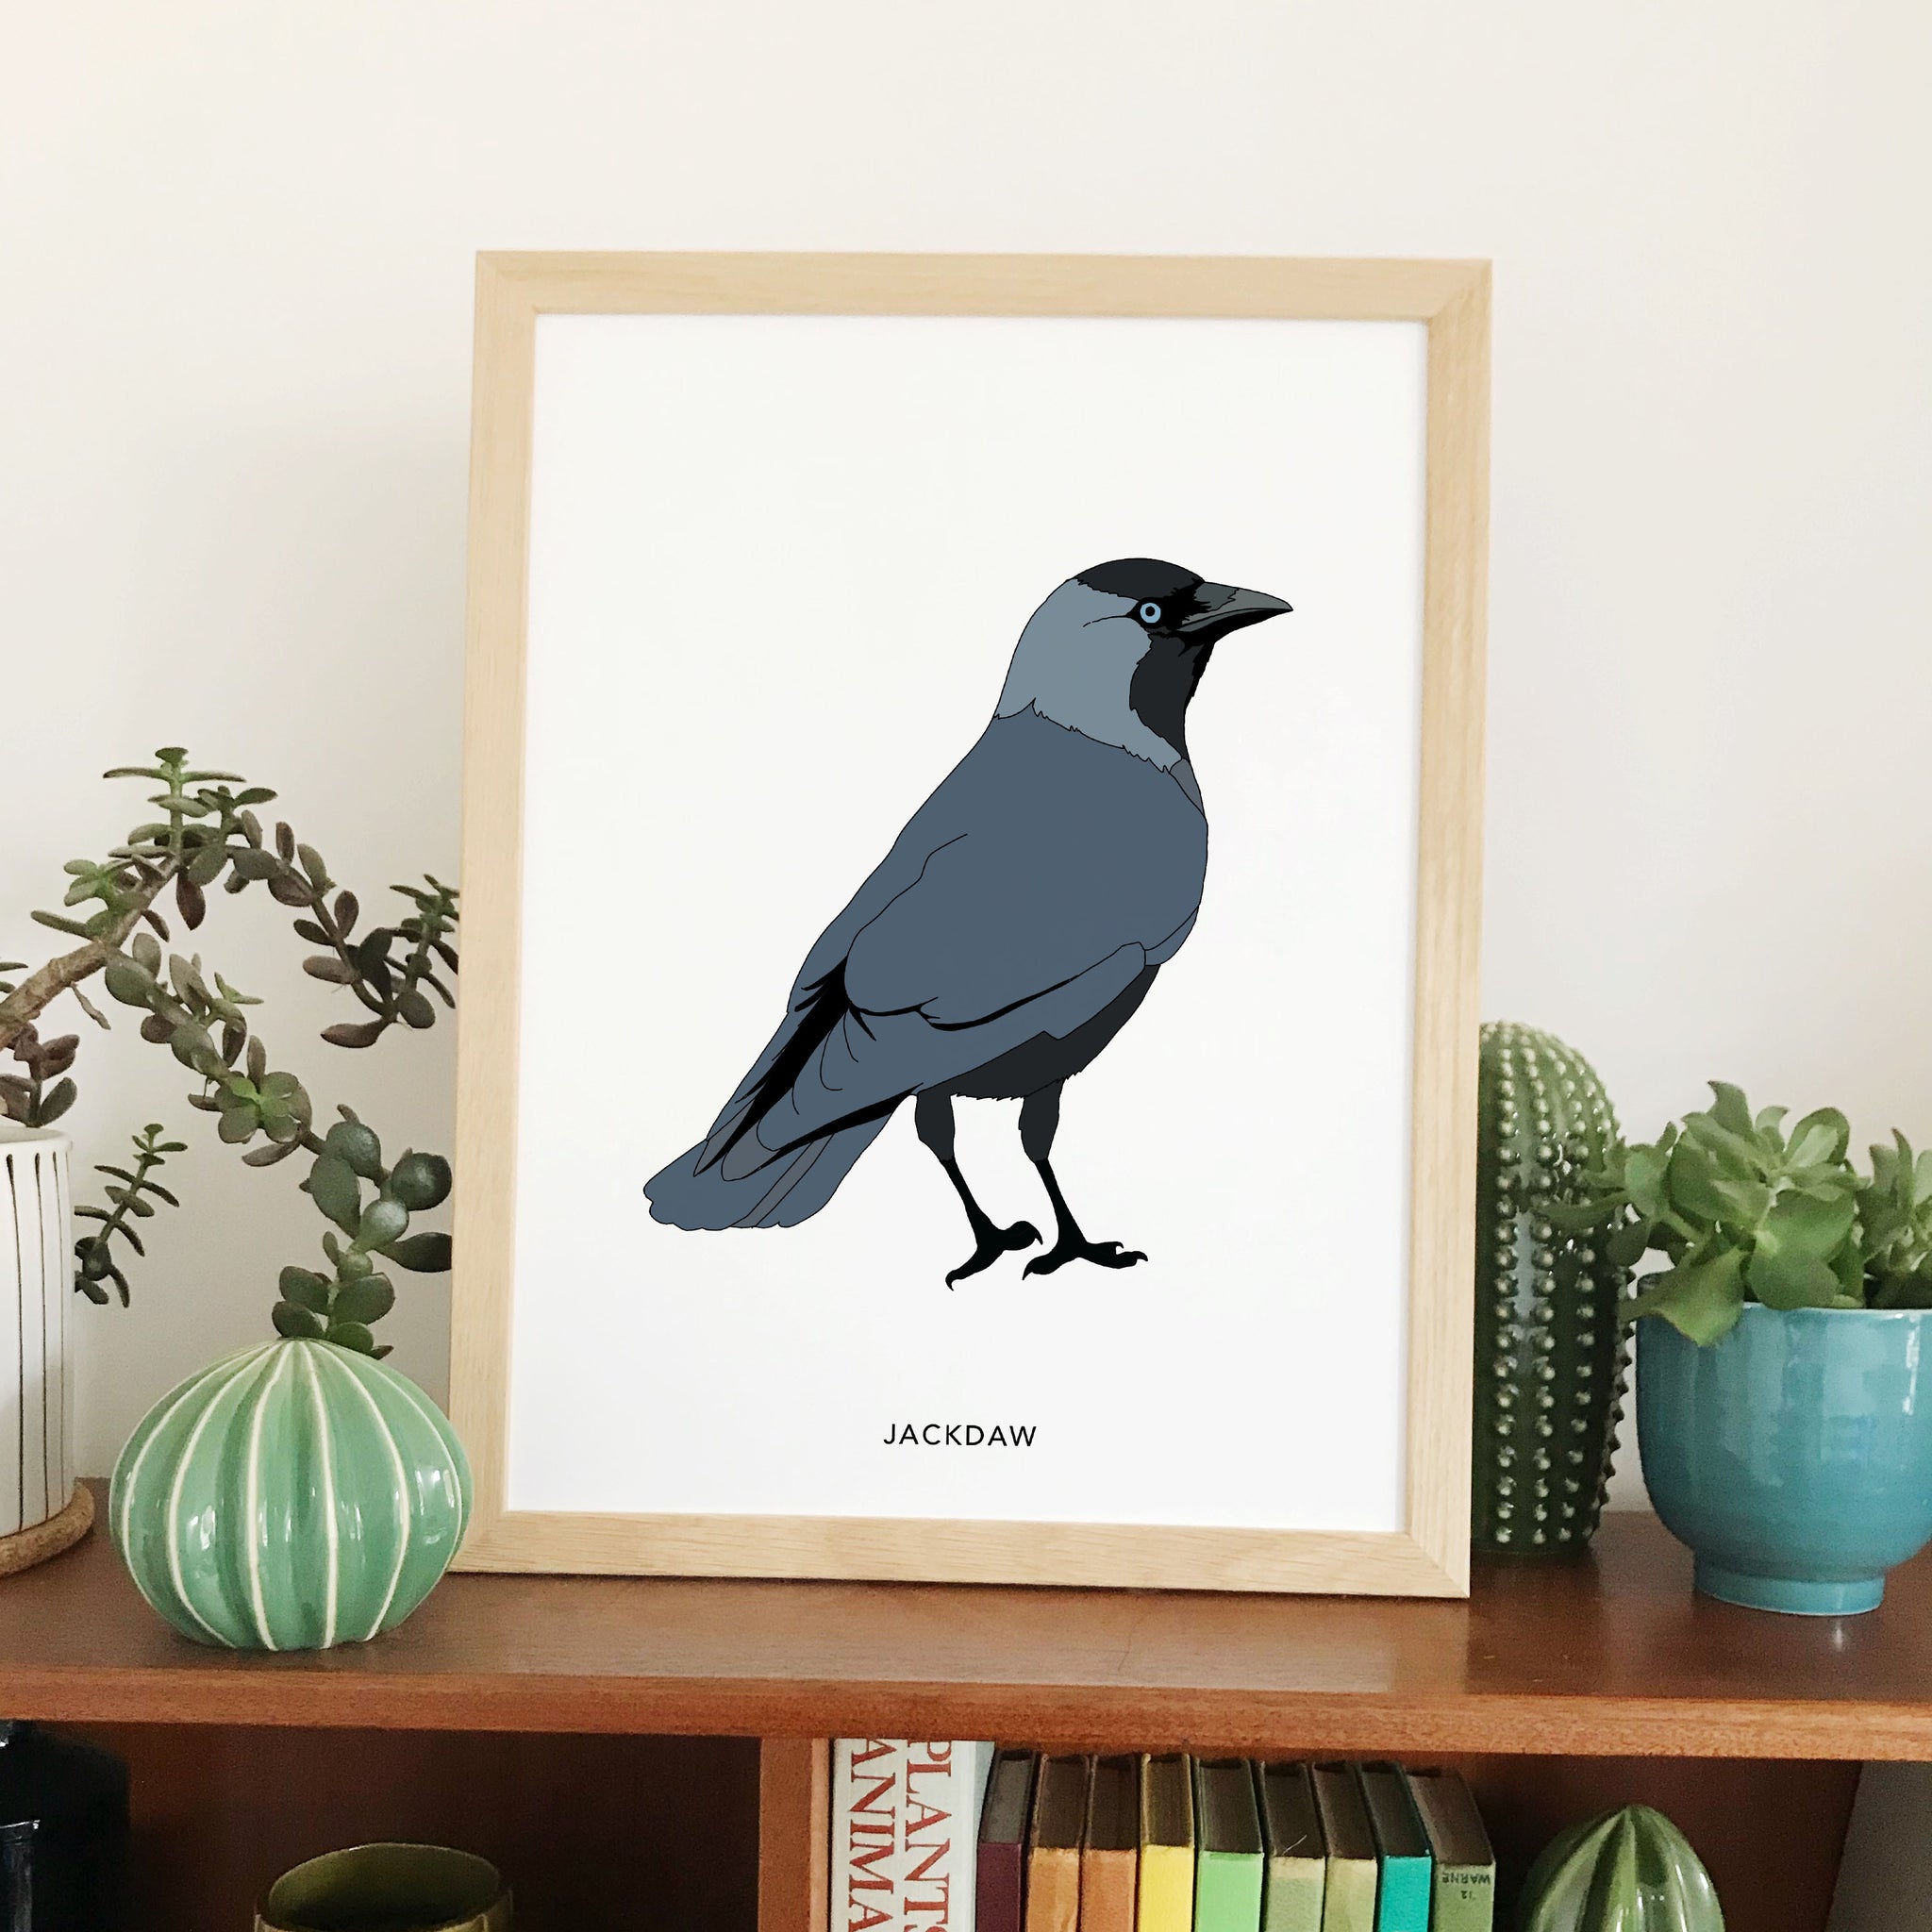 Jackdaw bird print